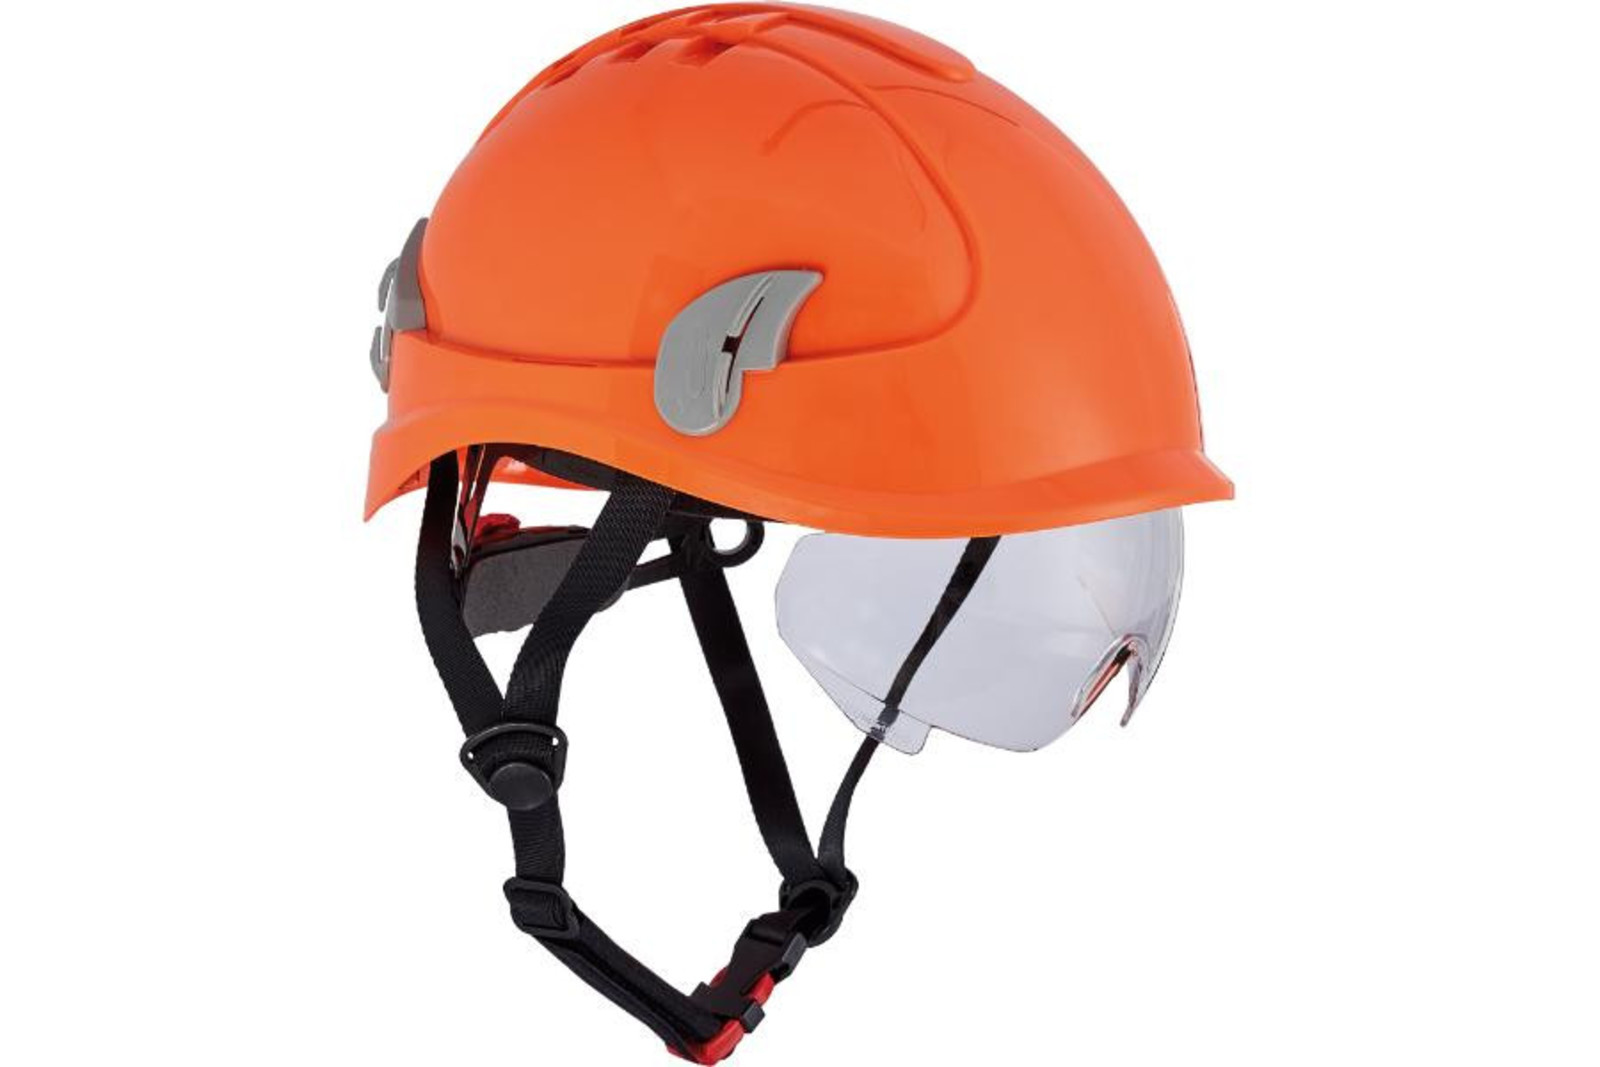 Ochranná prilba Alpinworker pre prácu vo výškach - farba: HV oranžová